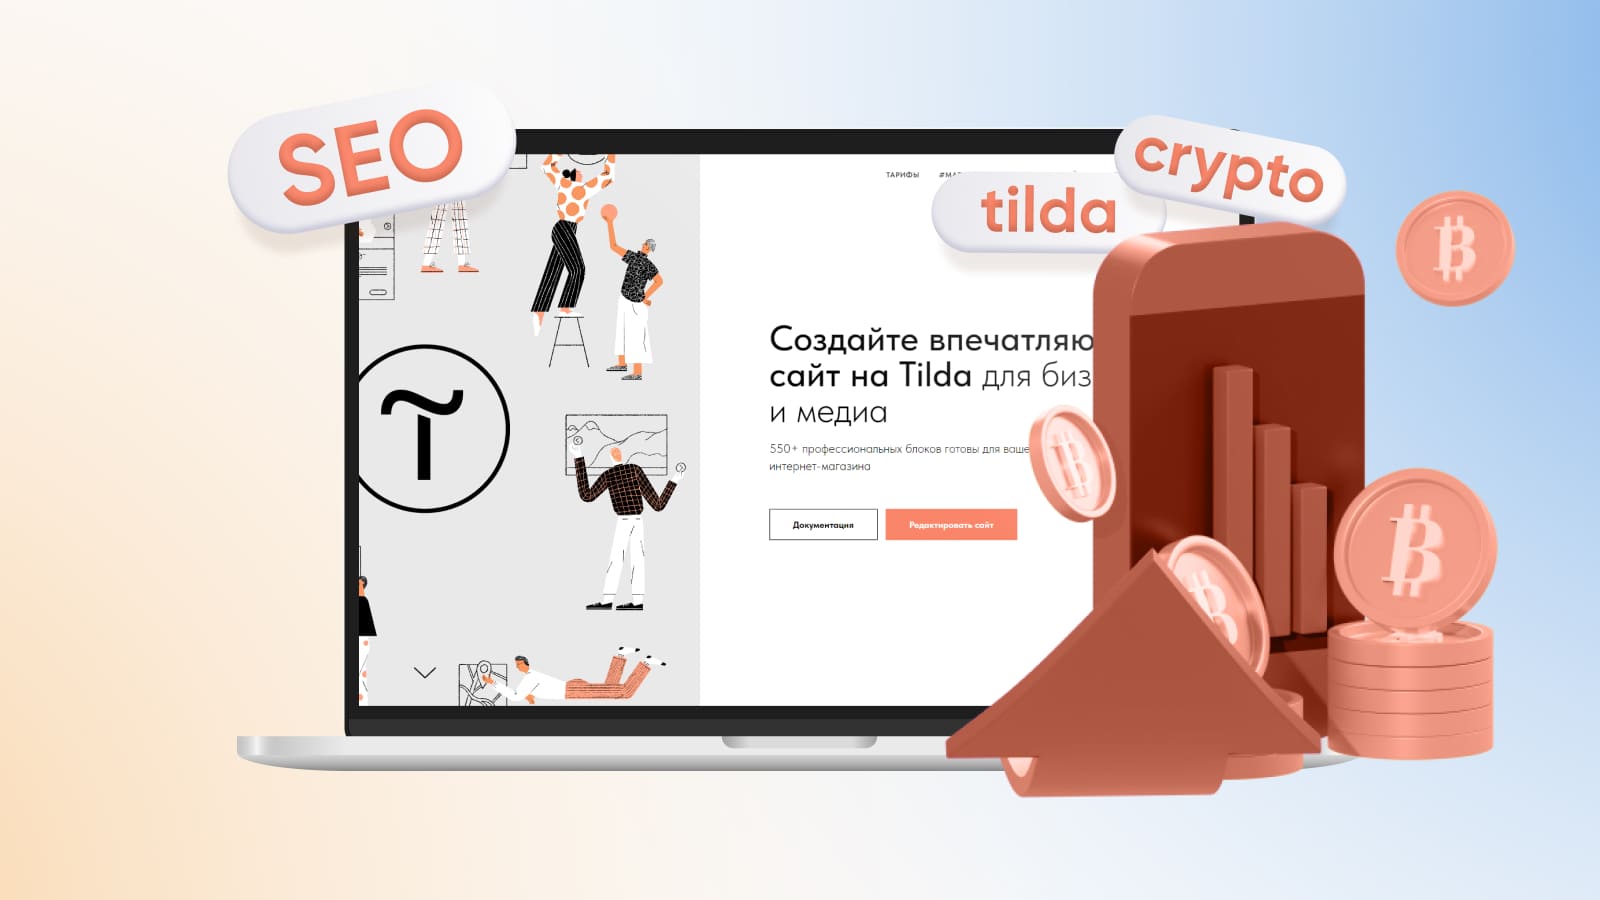 Как принимать платежи в криптовалюте на сайте Tilda